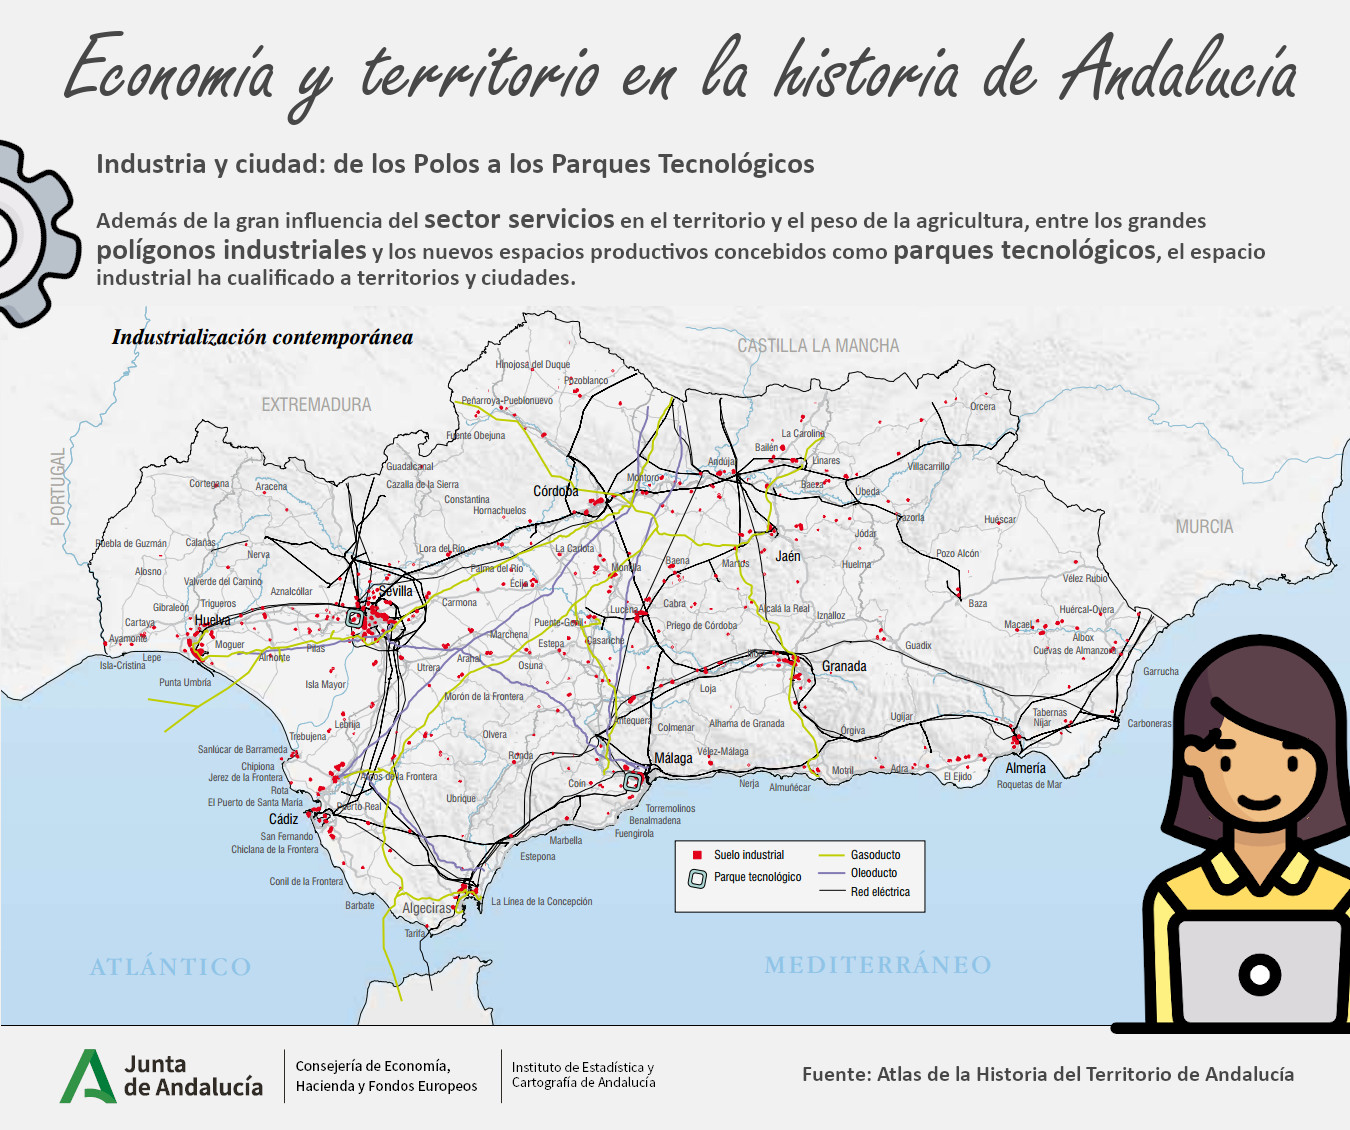 Economa y territorio en la historia de Andaluca. Actual. Dibujo creado por Freepik